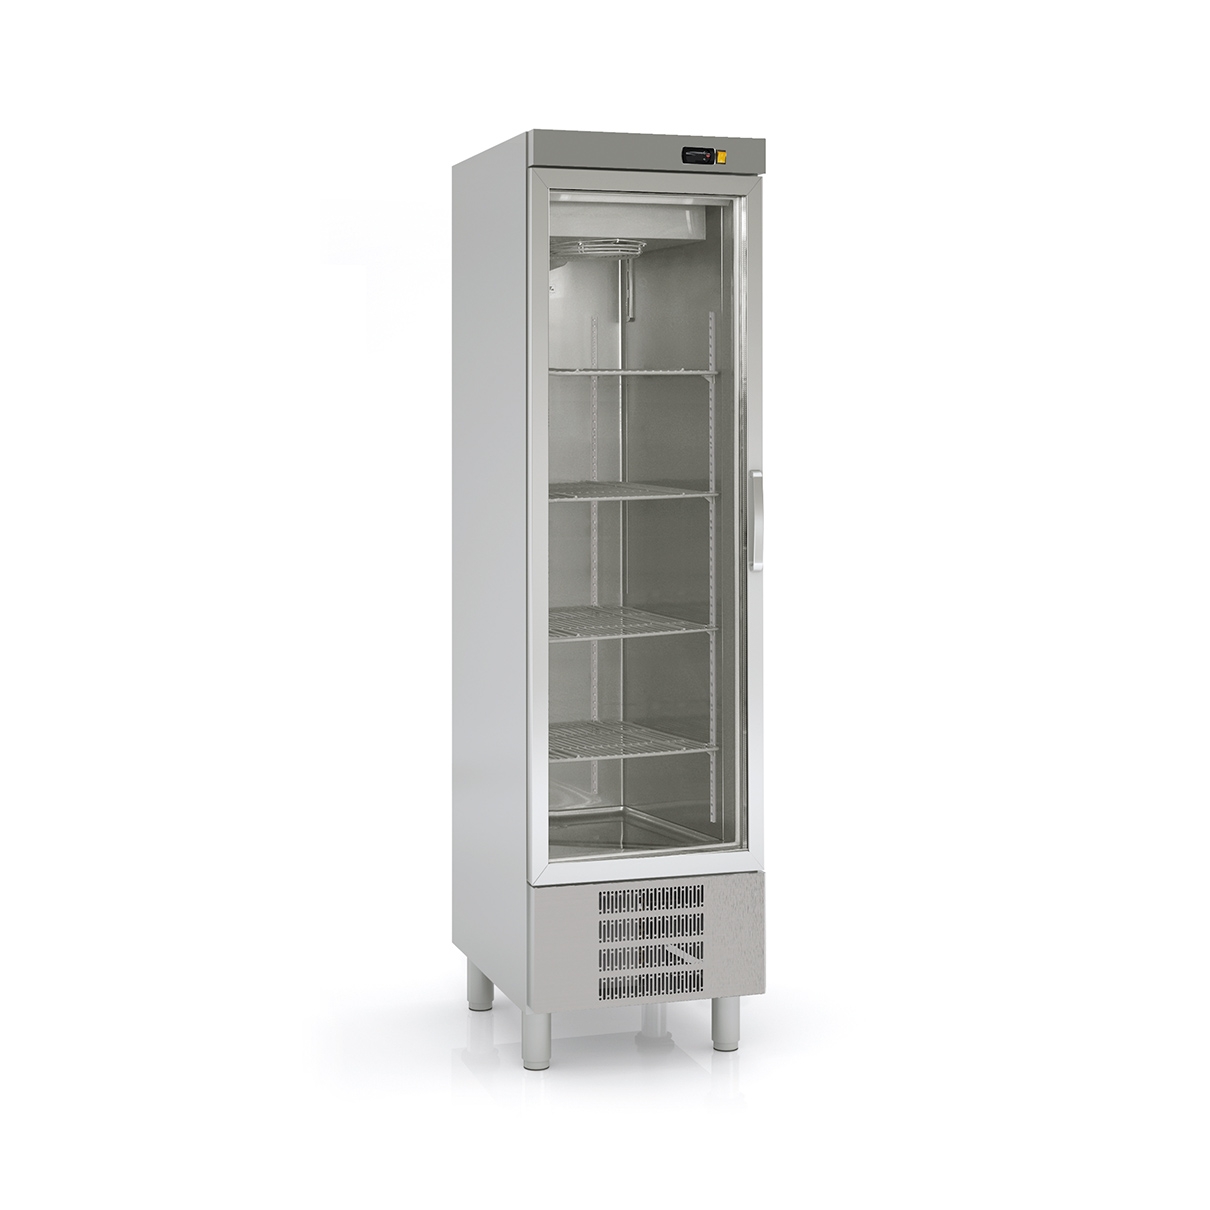 SNACK Refrigerated Cabinet ASVD-55